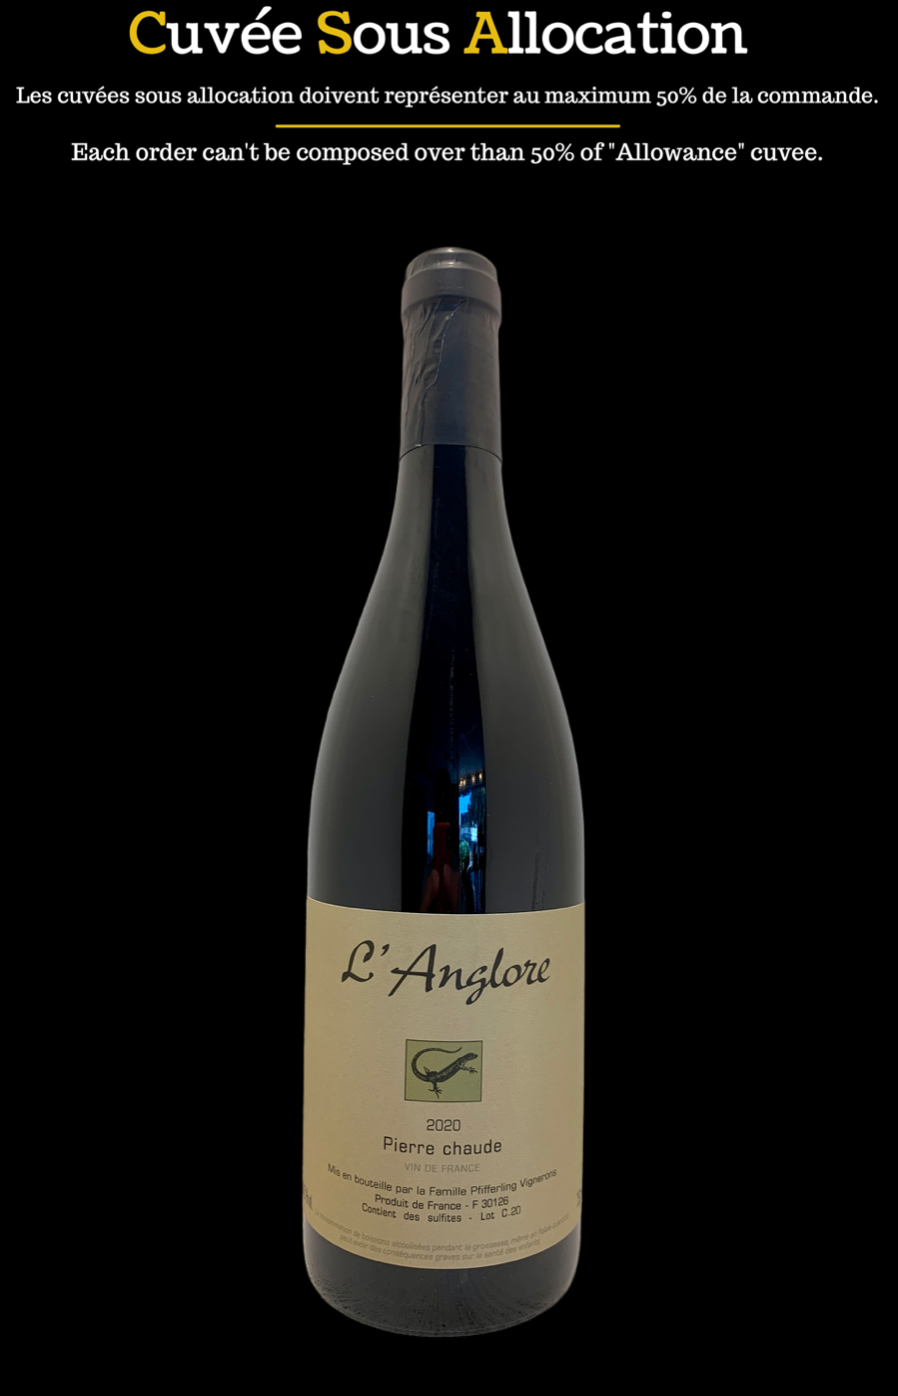 vin de la vallée du rhône valley wine organic biodynamie eric pfifferling domaine l'anglore vin de france pierre chaude rouge grenache clairette carignan 2020